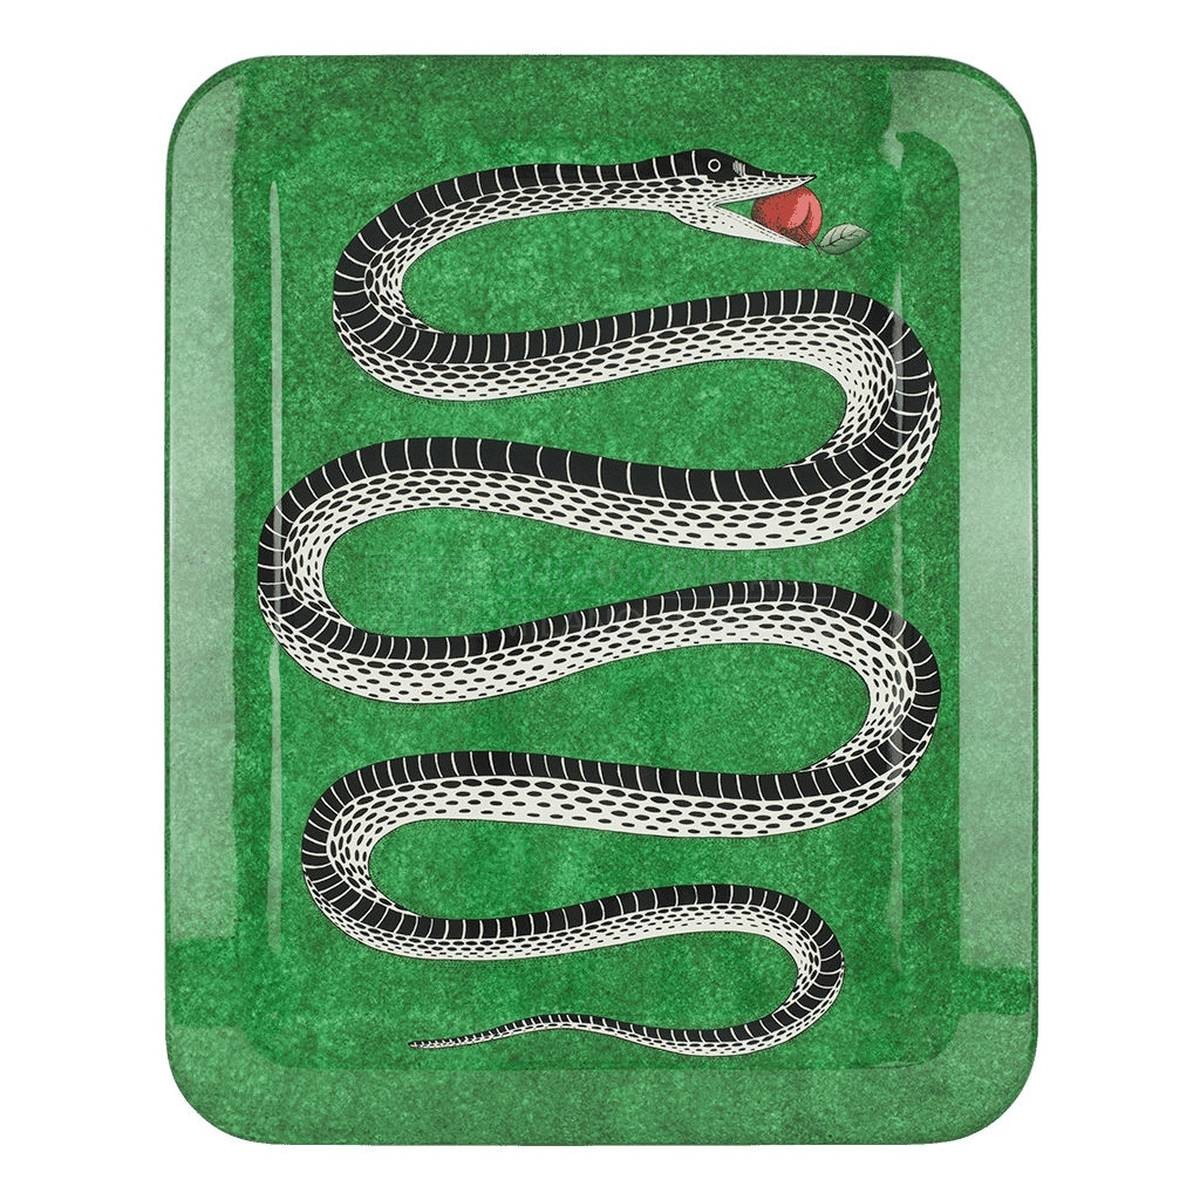 Поднос Serpente tray из Италии фабрики FORNASETTI